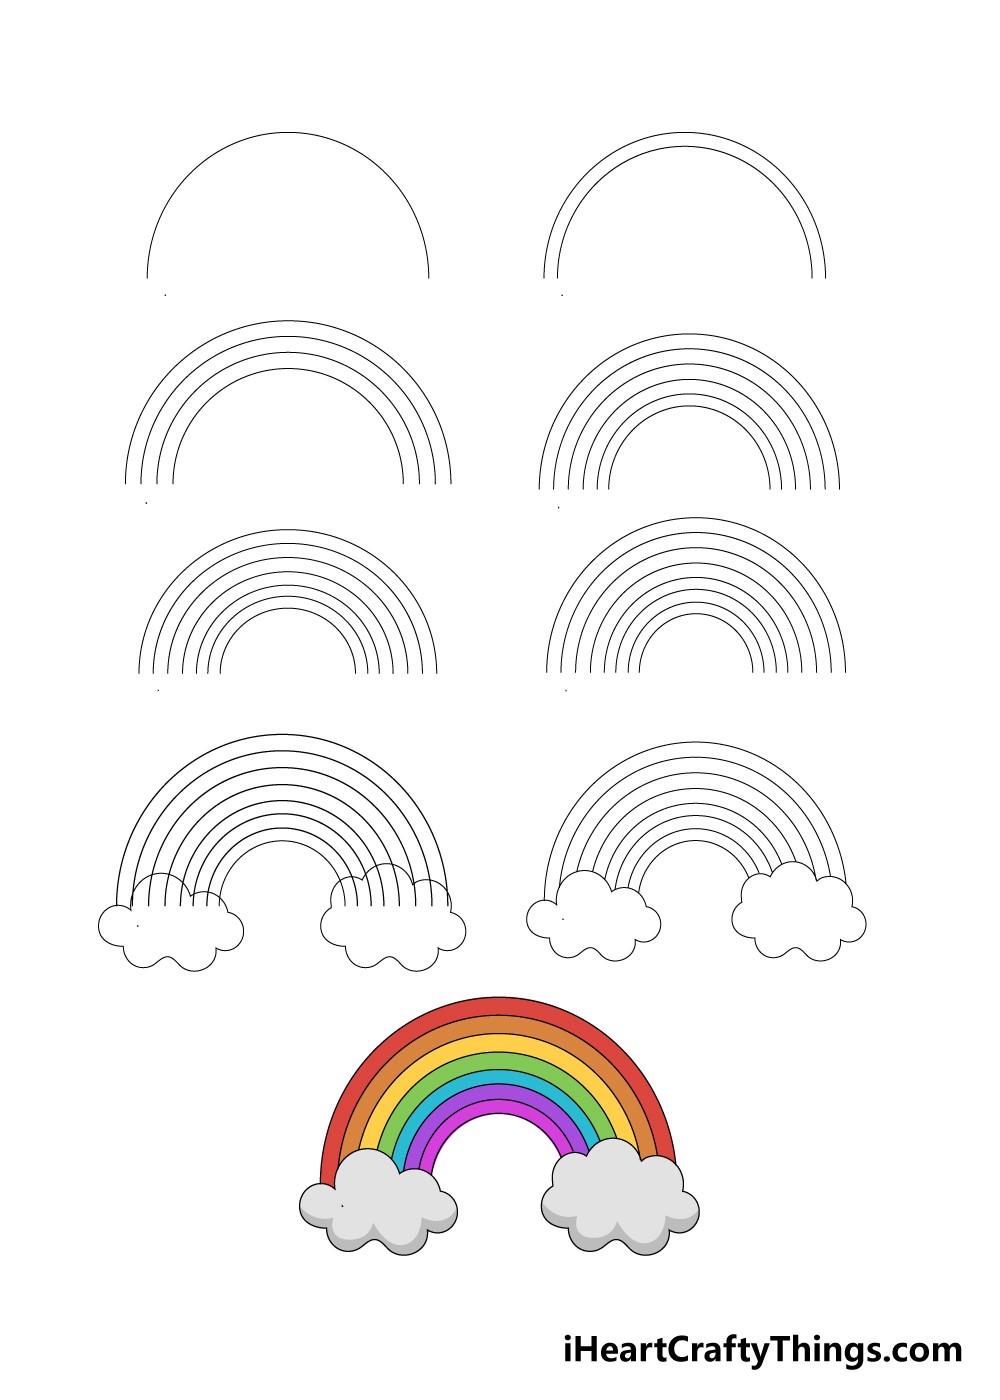 Regenbogenidee 1 zeichnen ideen